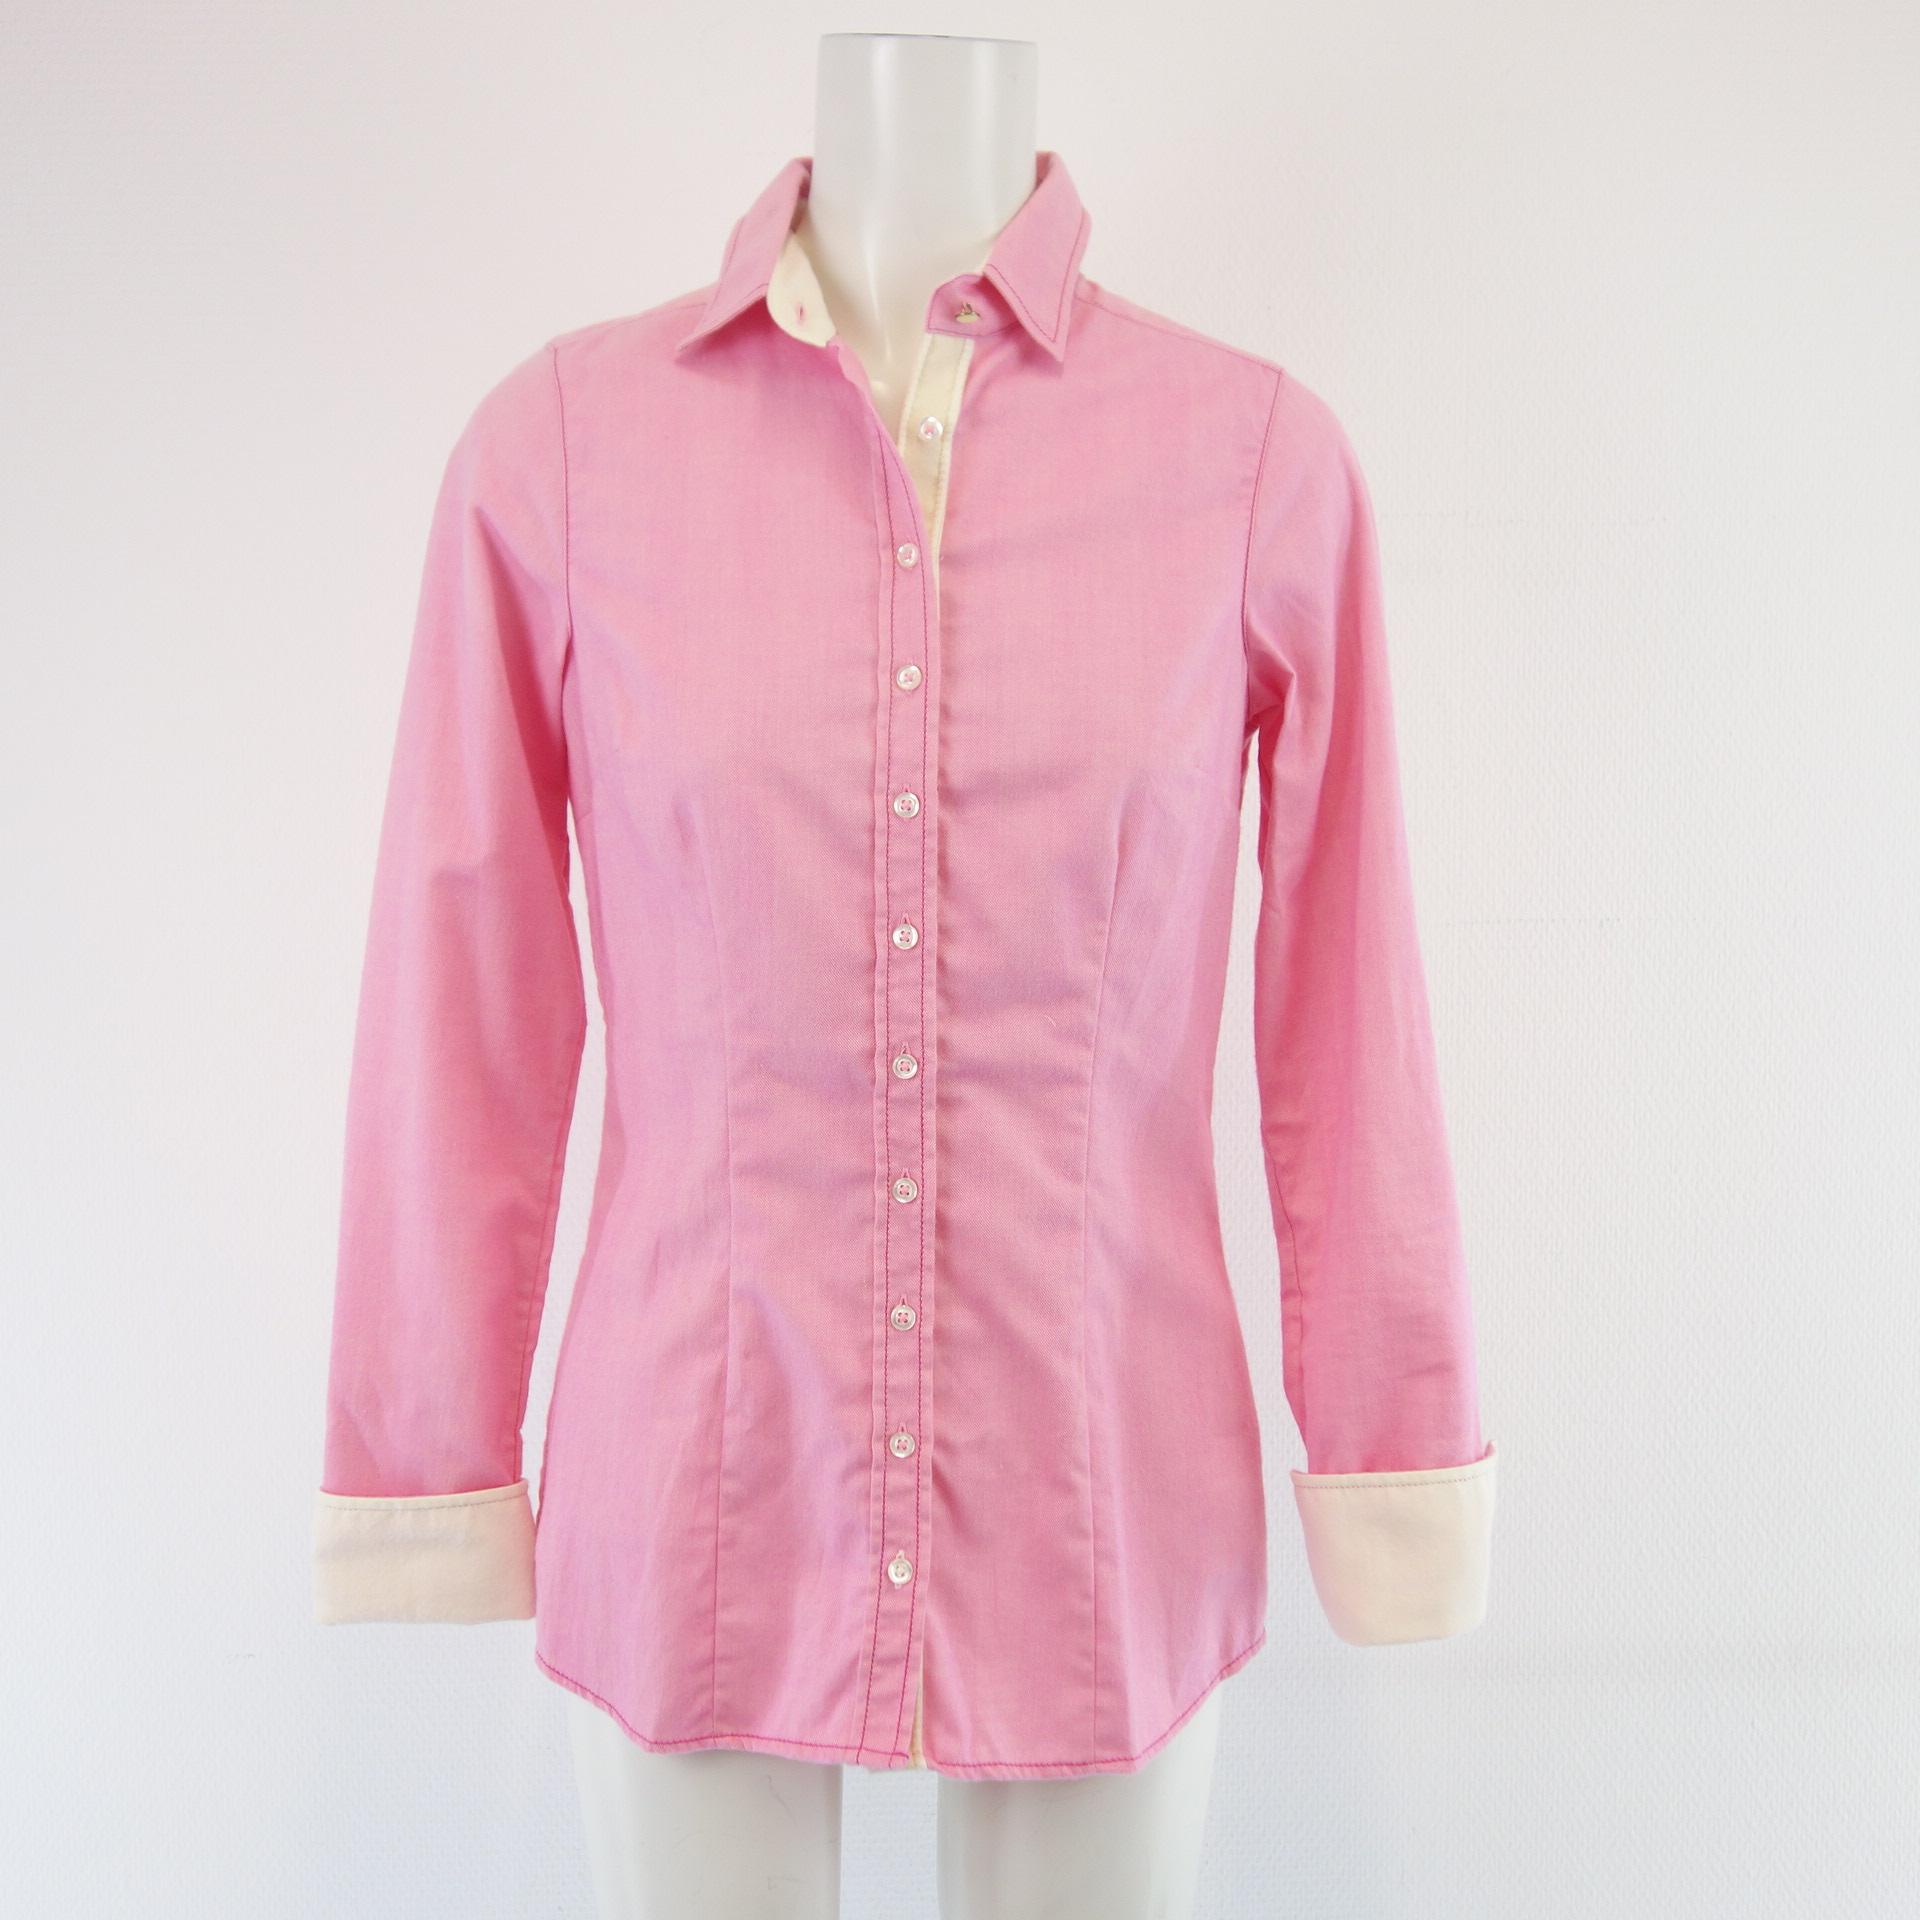 BYMI Damen Bluse Hemd Tunika Oberteil Rosa 100% Baumwolle Größe 34